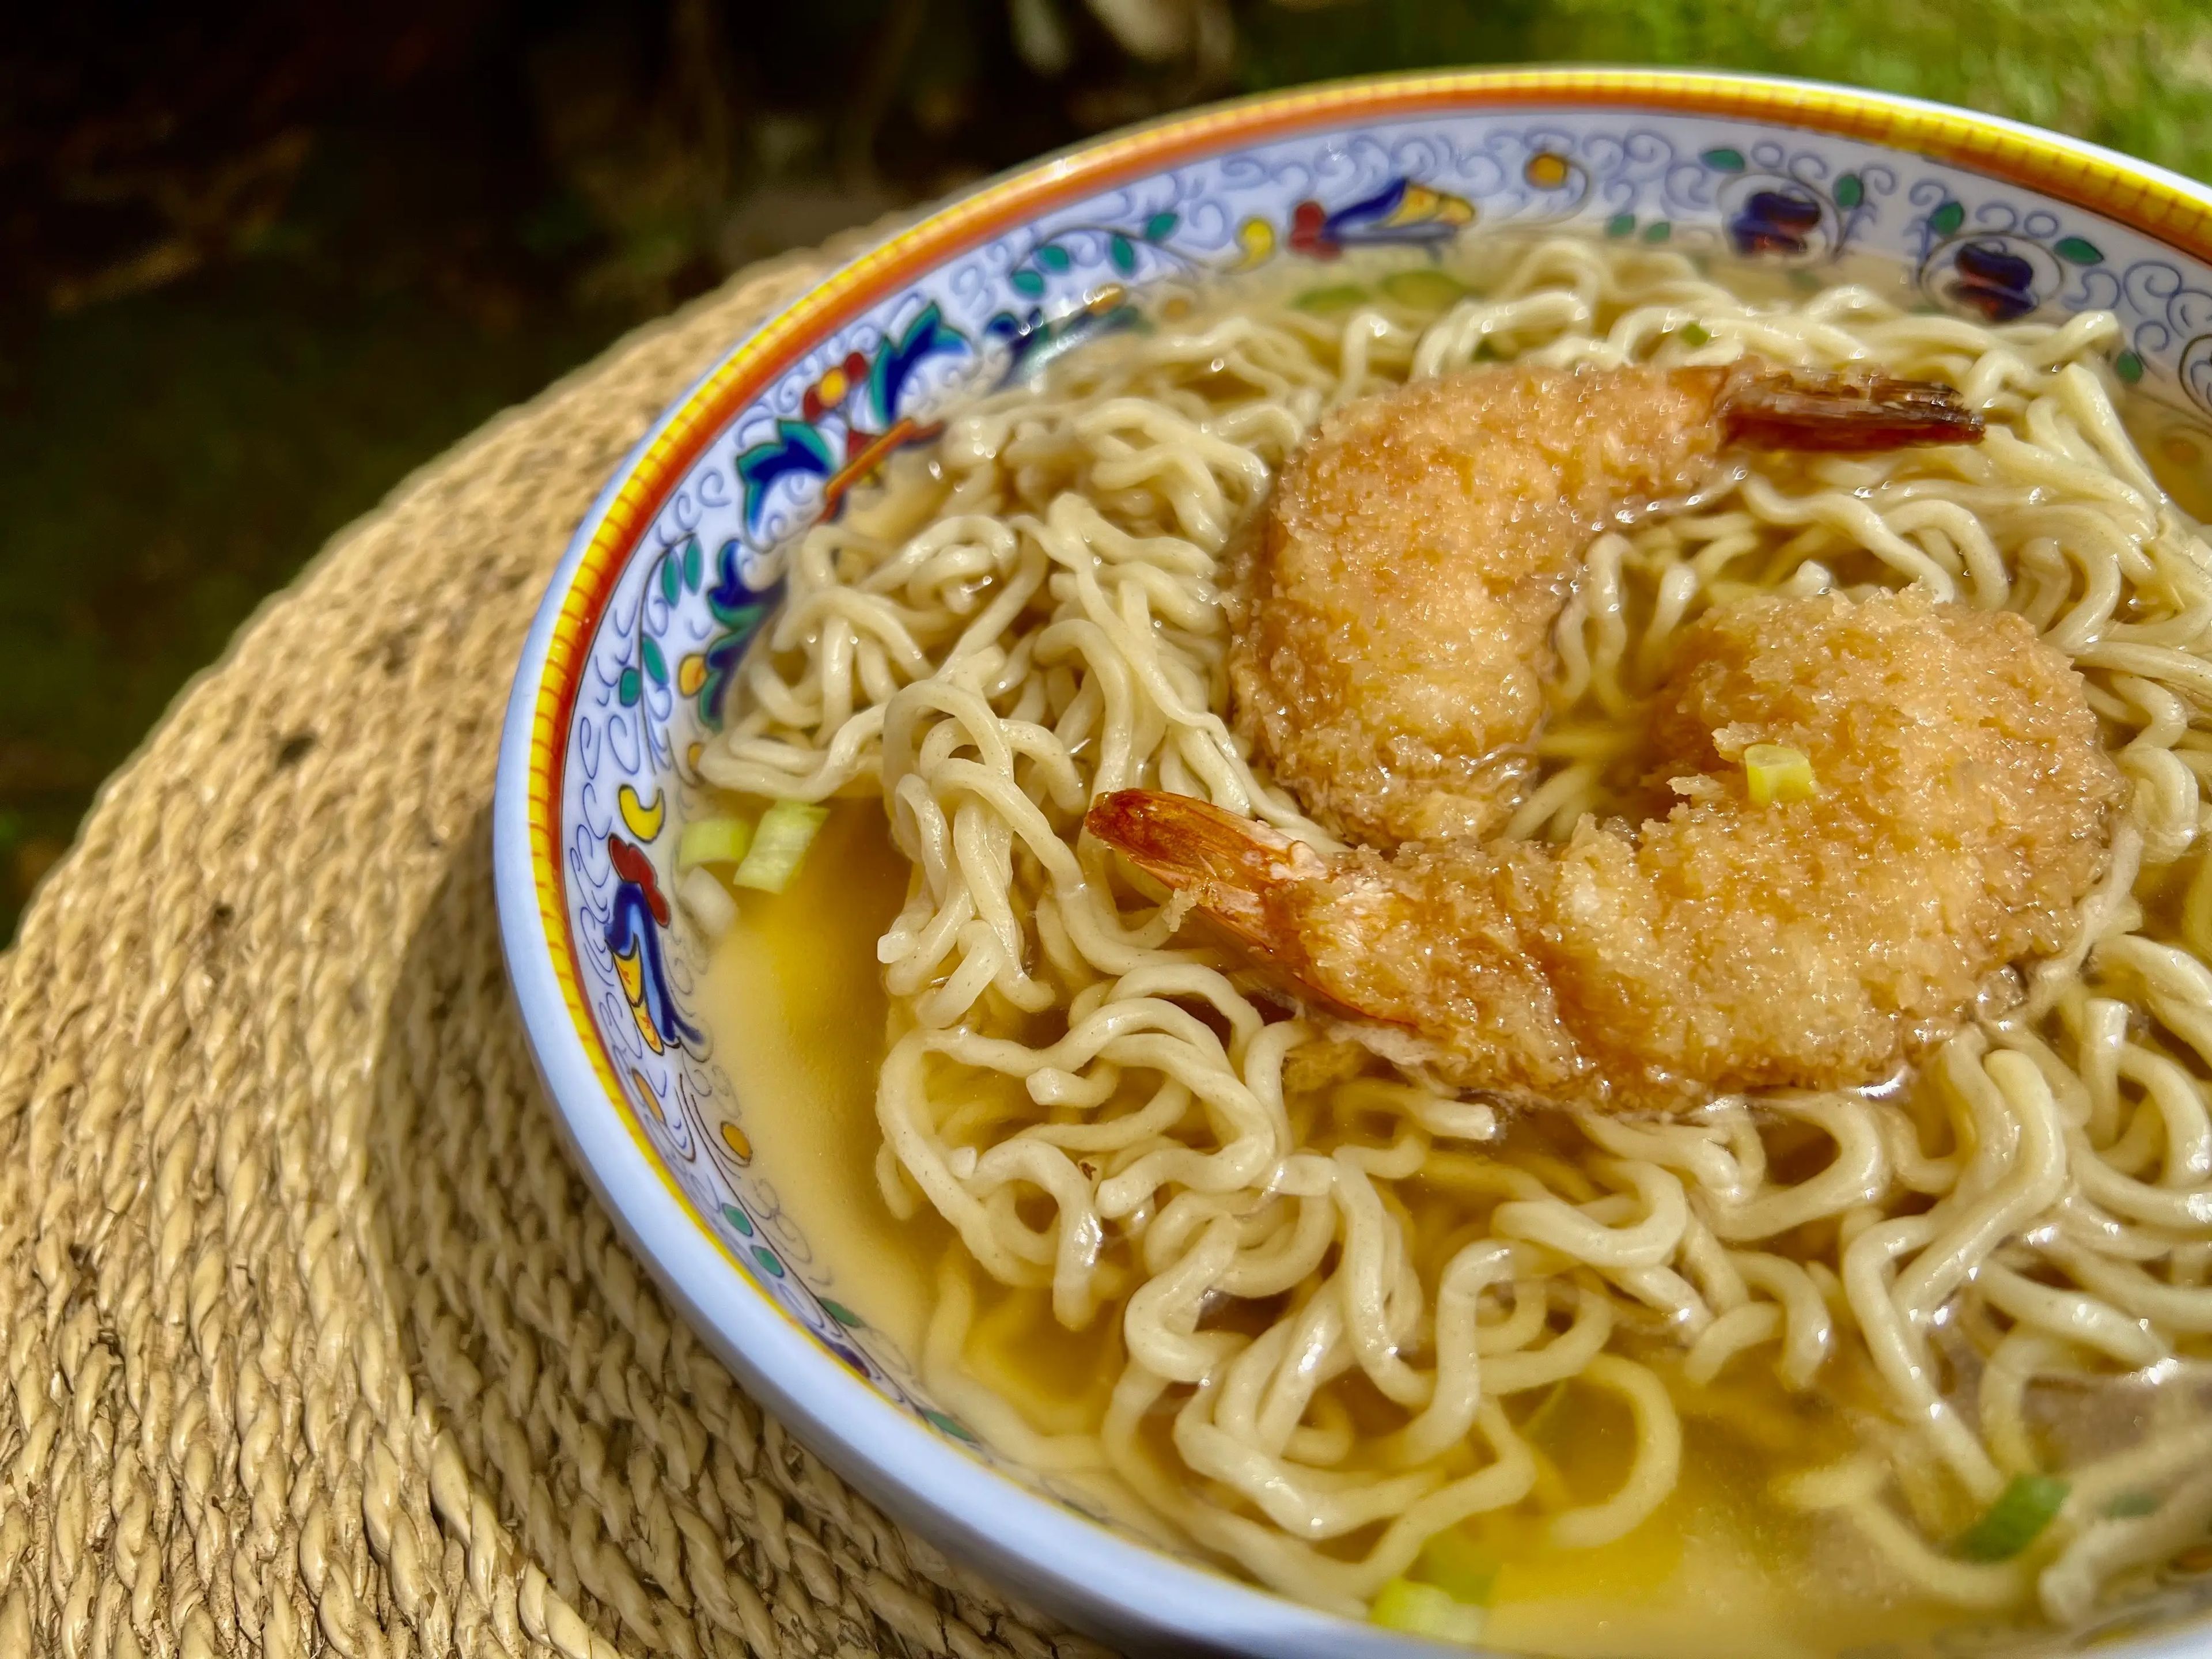 fried shrimp in noodle soup